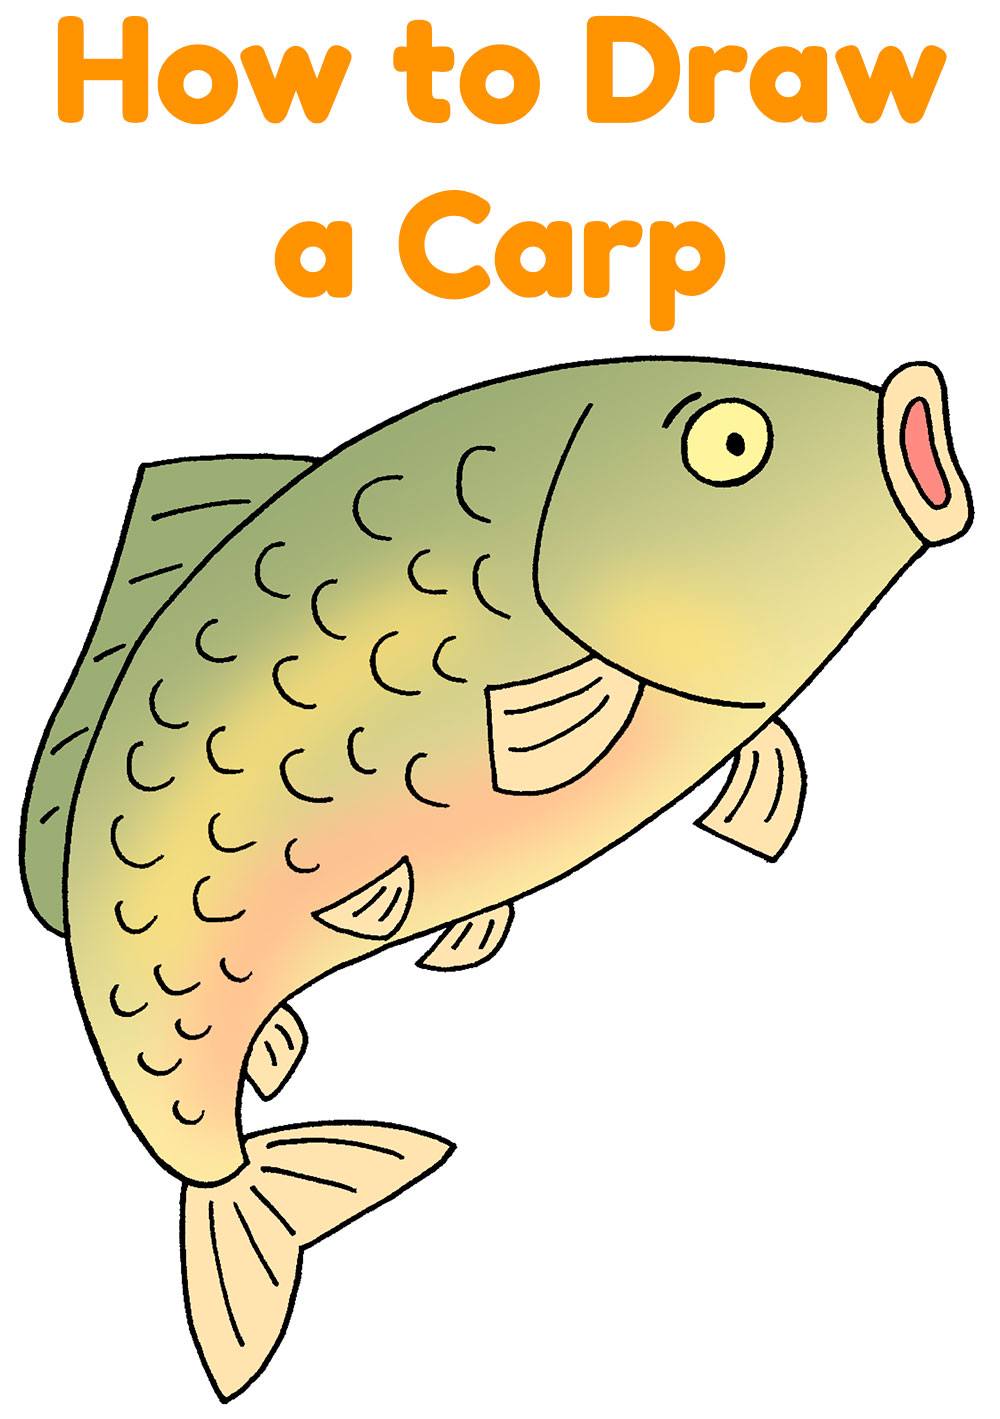 How to Draw a Carp